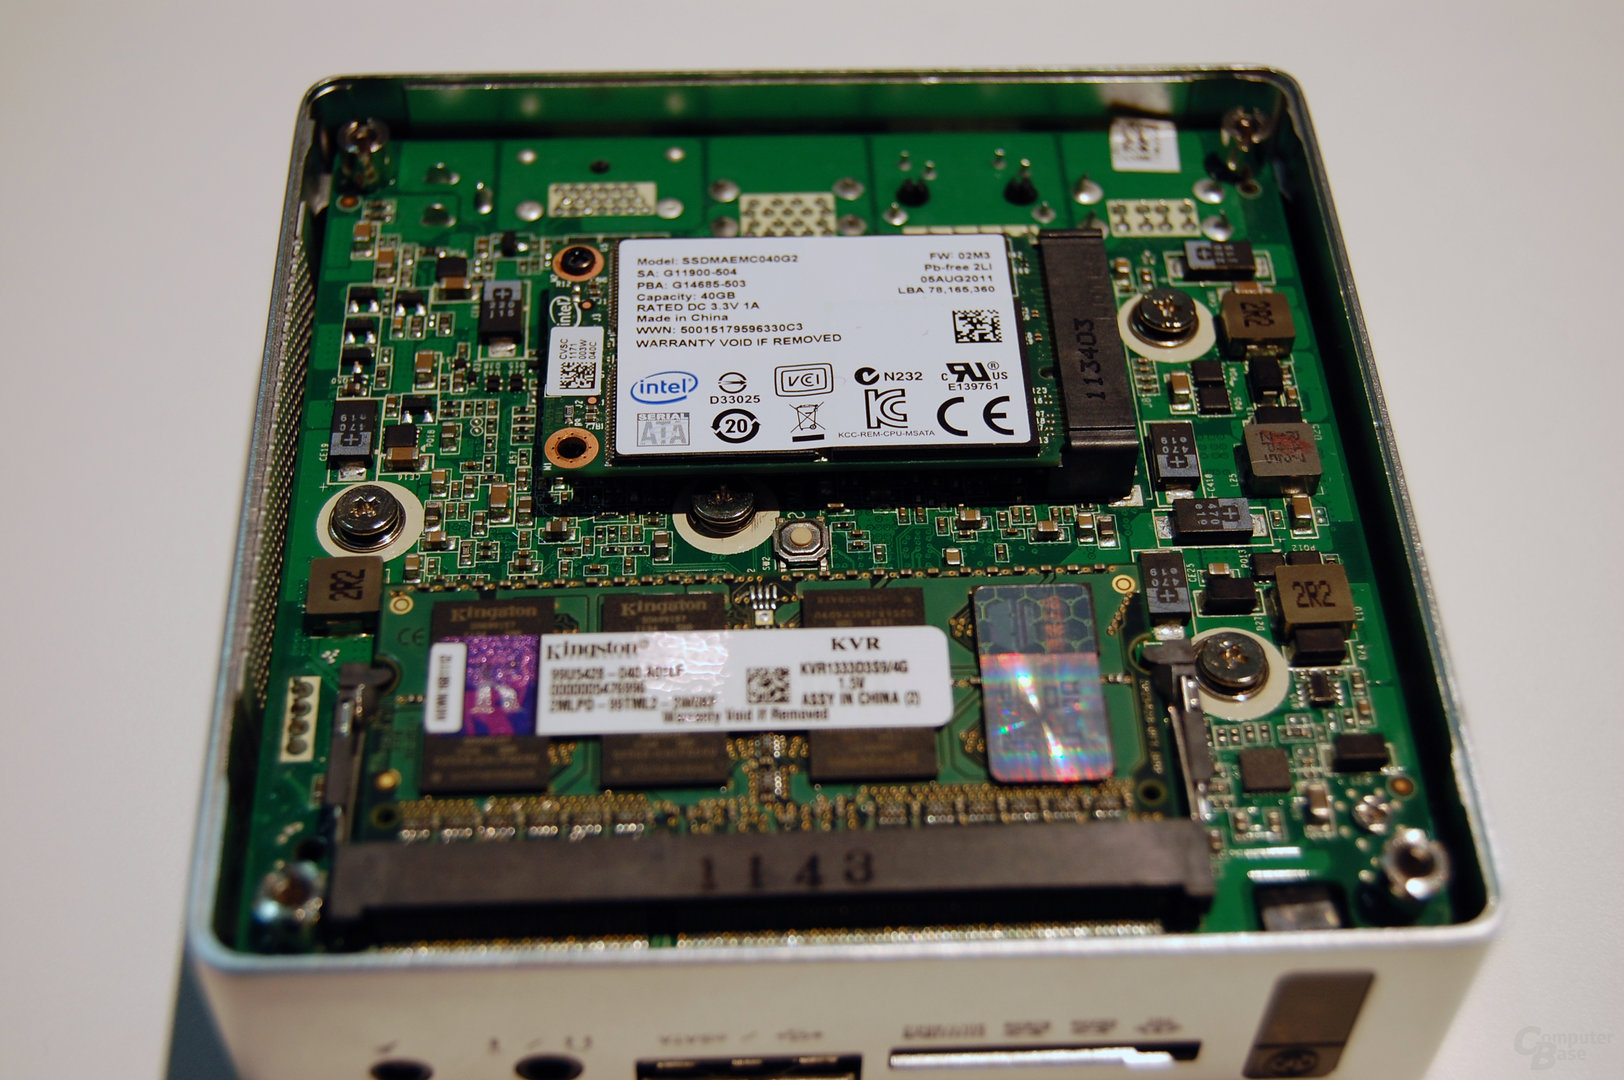 Prototyp einer kleineren Zotac ZBox mit SSD und unbekannter CPU und Chipsatz